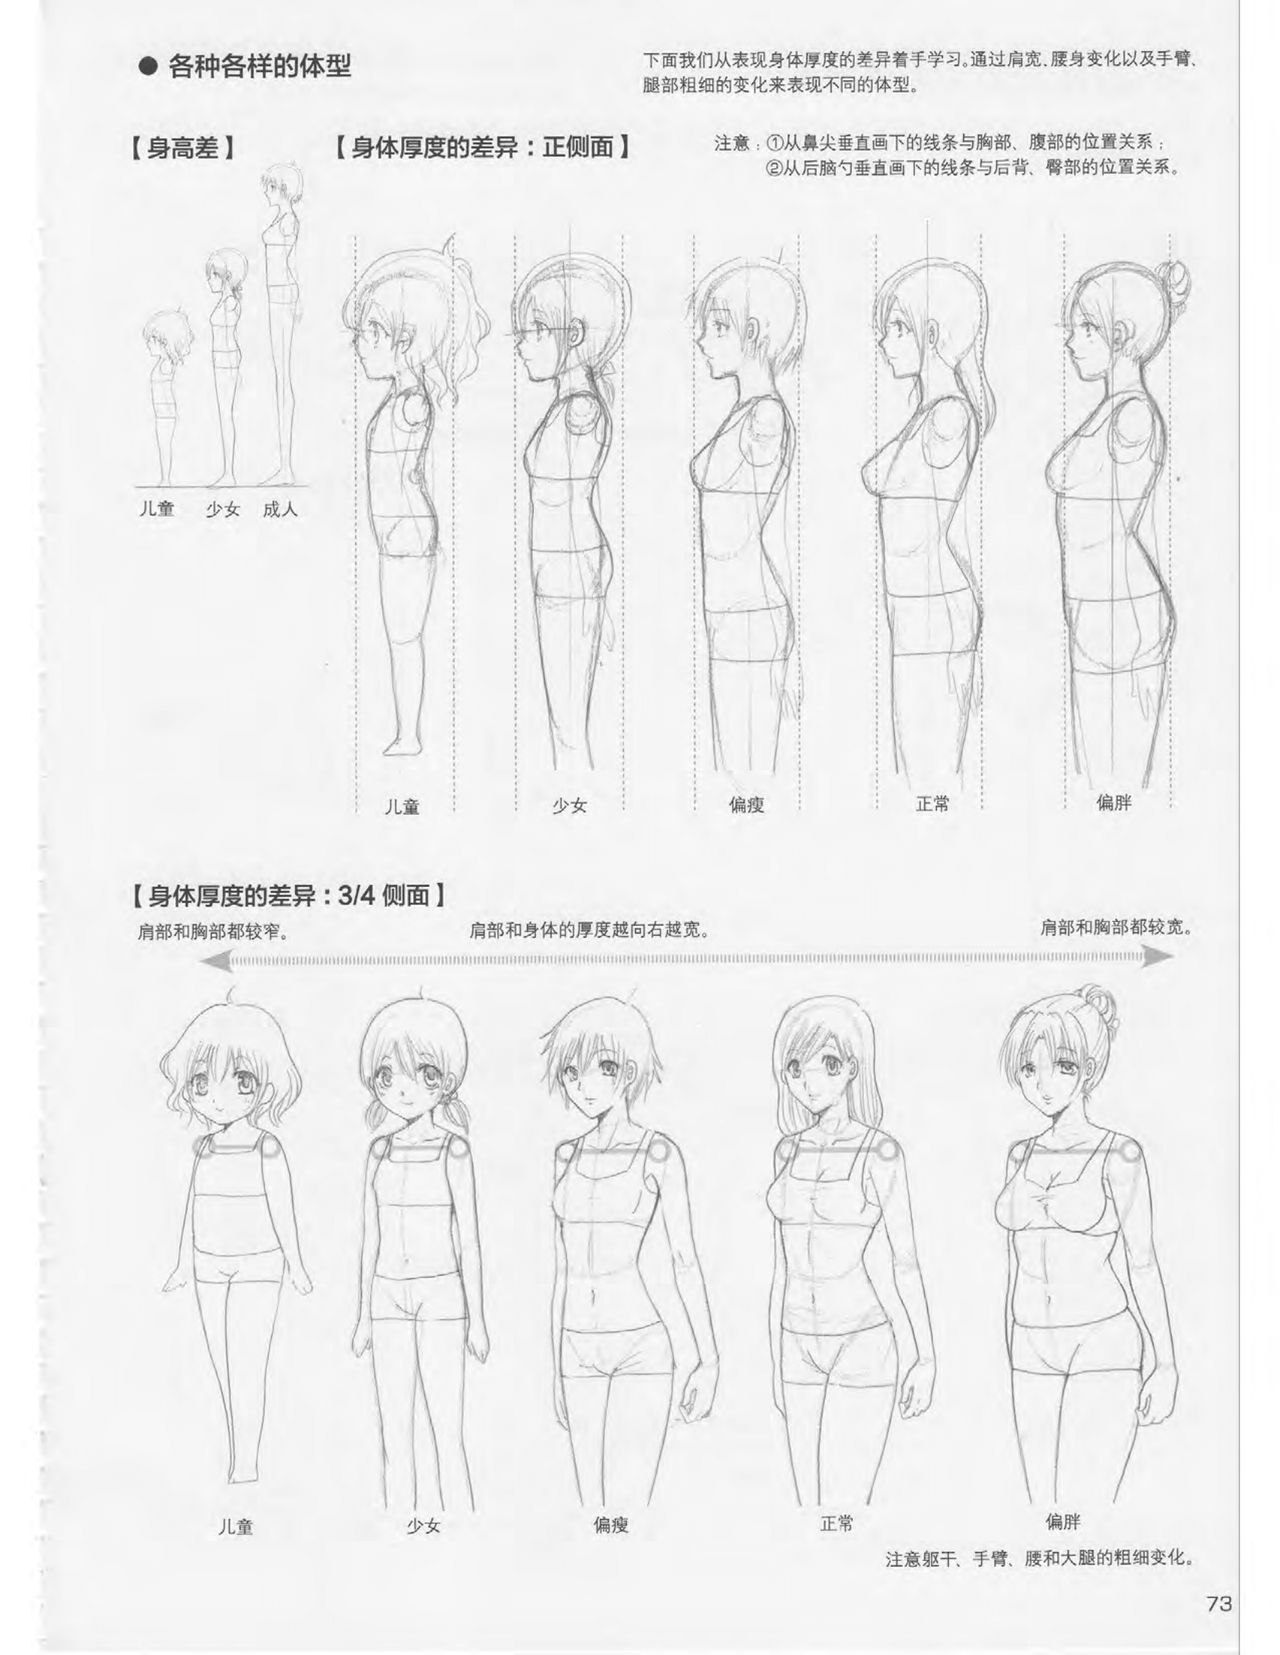 Japanese Manga Master Lecture 3: Lin Akira and Kakumaru Maru Talk About Glamorous Character Modeling 73